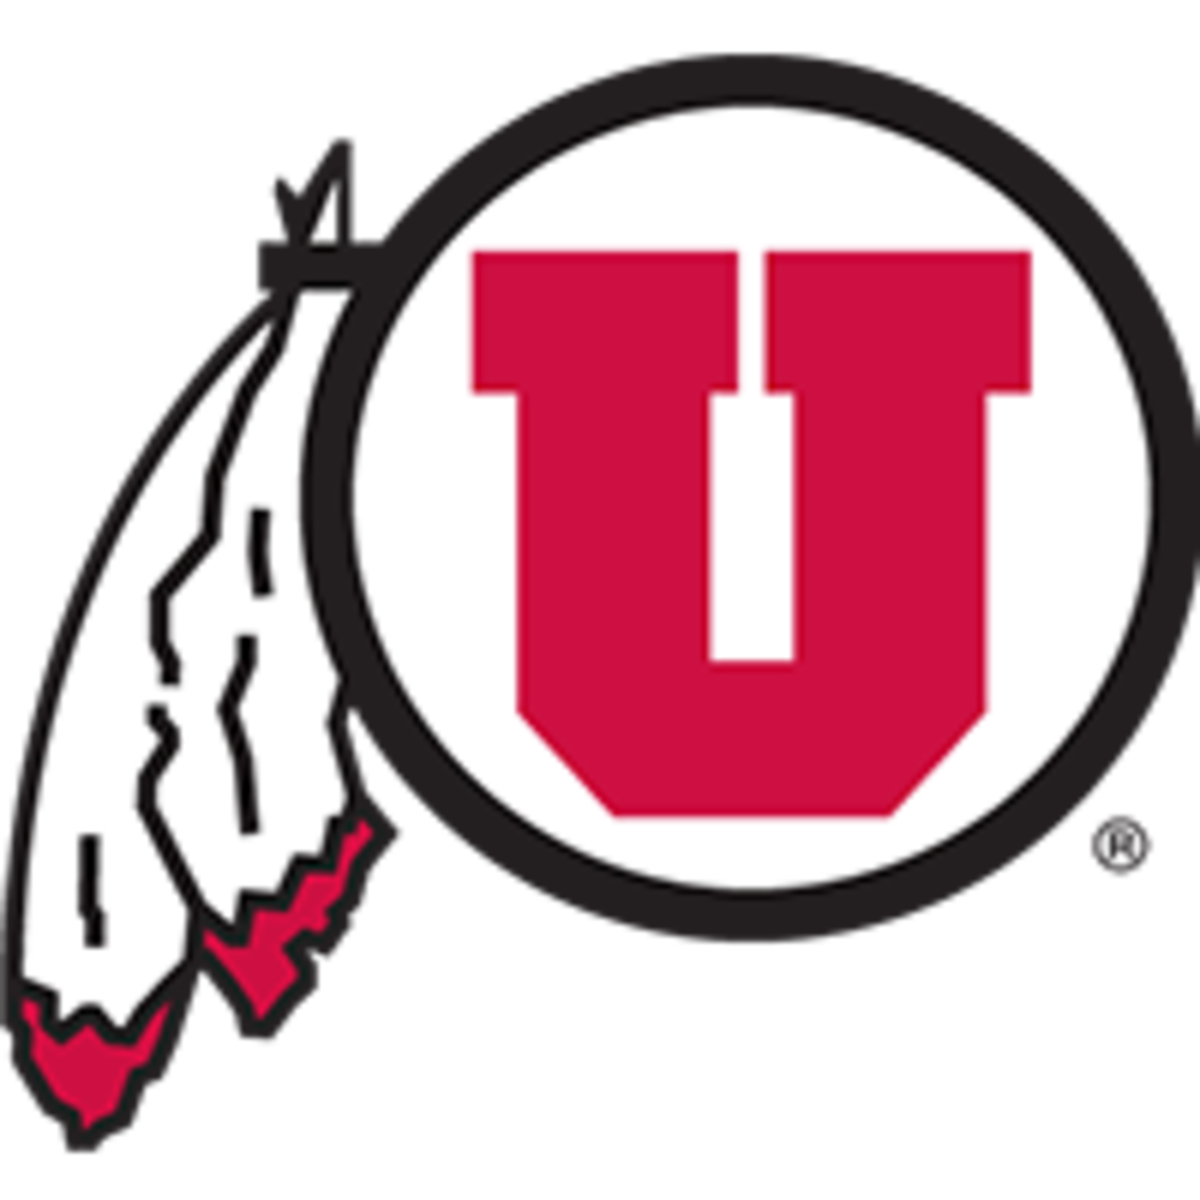 NCAAF Top 25 Rankings: Utah